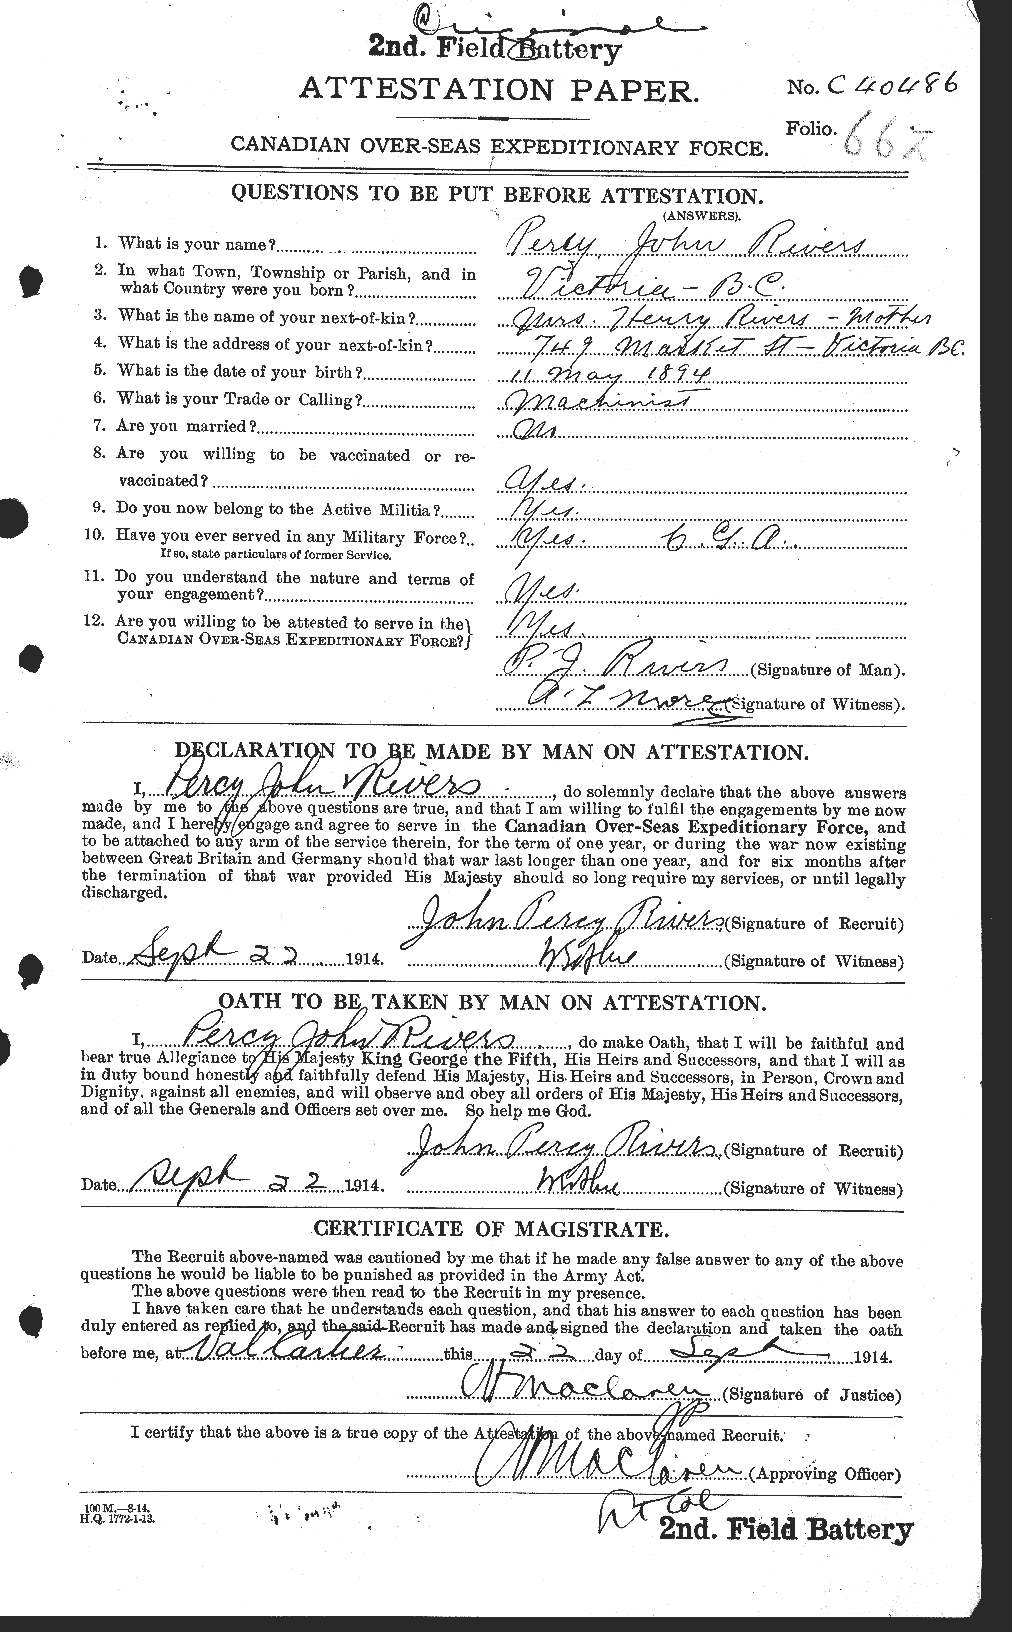 Dossiers du Personnel de la Première Guerre mondiale - CEC 608178a